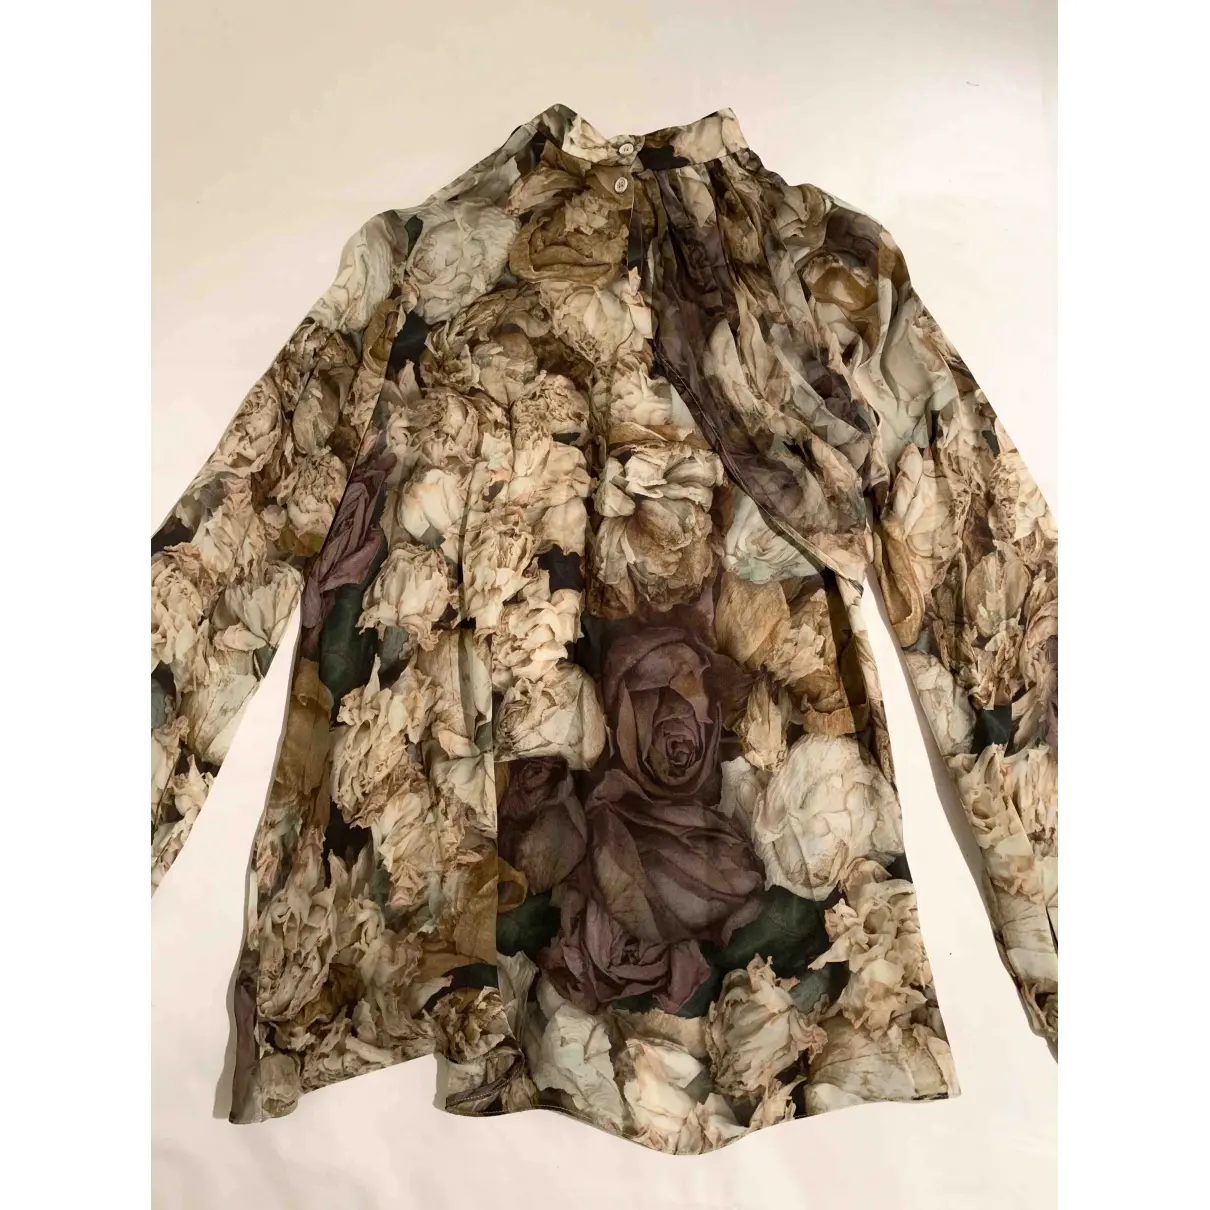 Buy Christopher Kane Silk blouse online